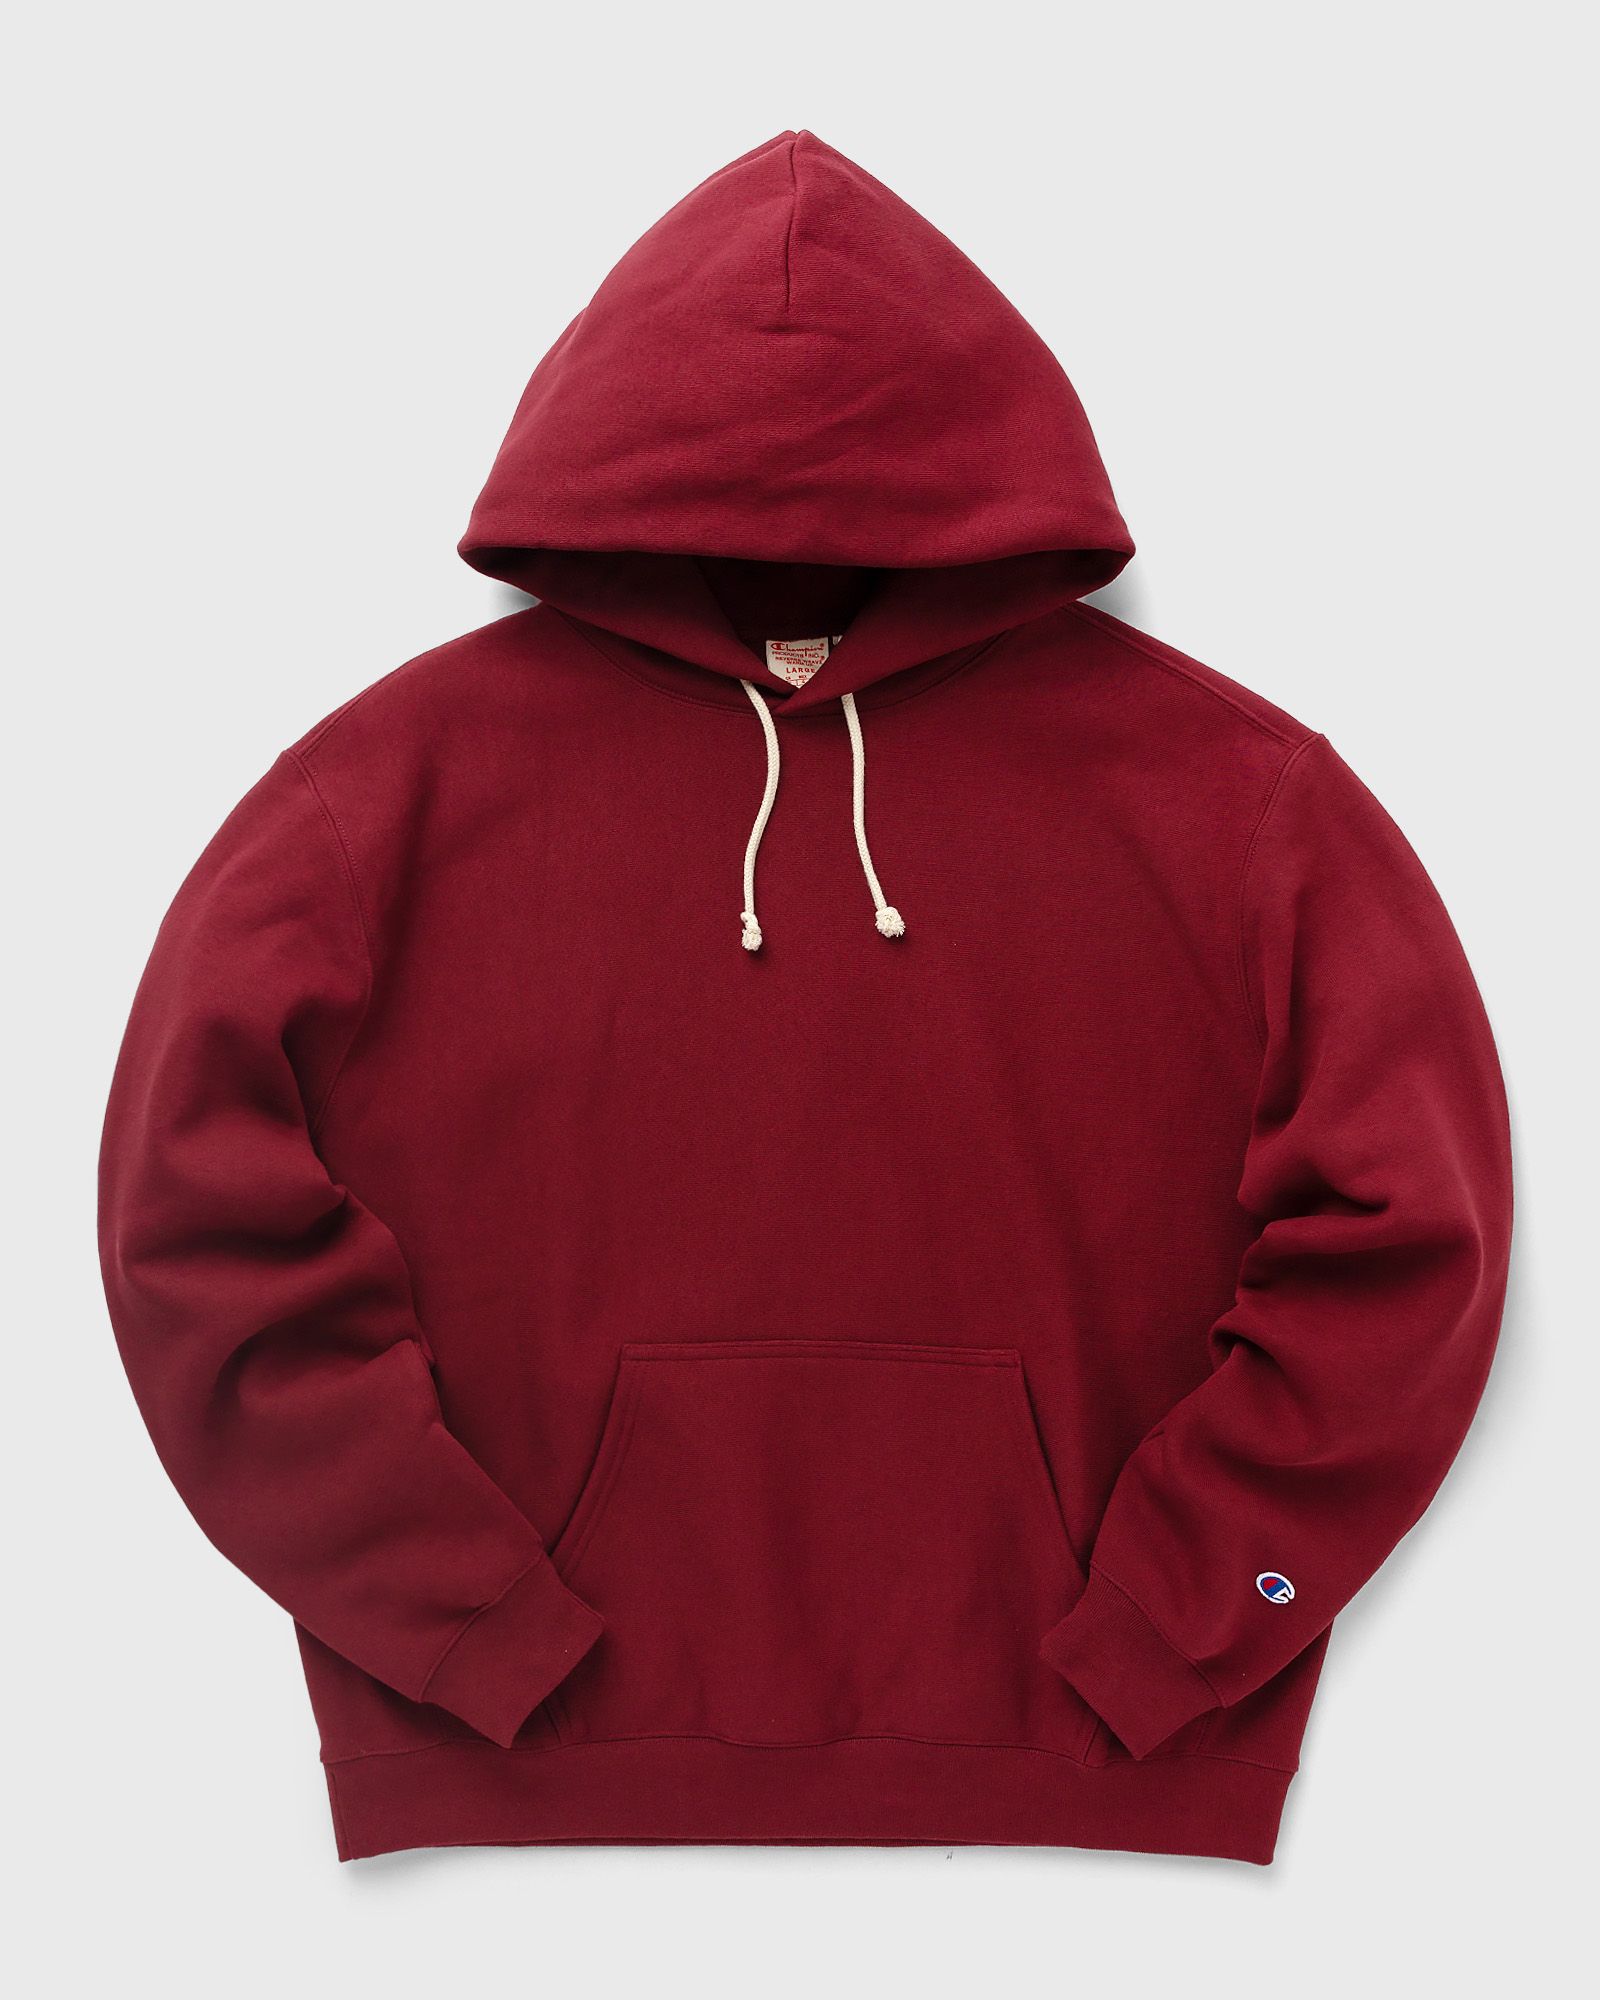 CHAMPION - hooded sweatshirt men hoodies red in größe:l